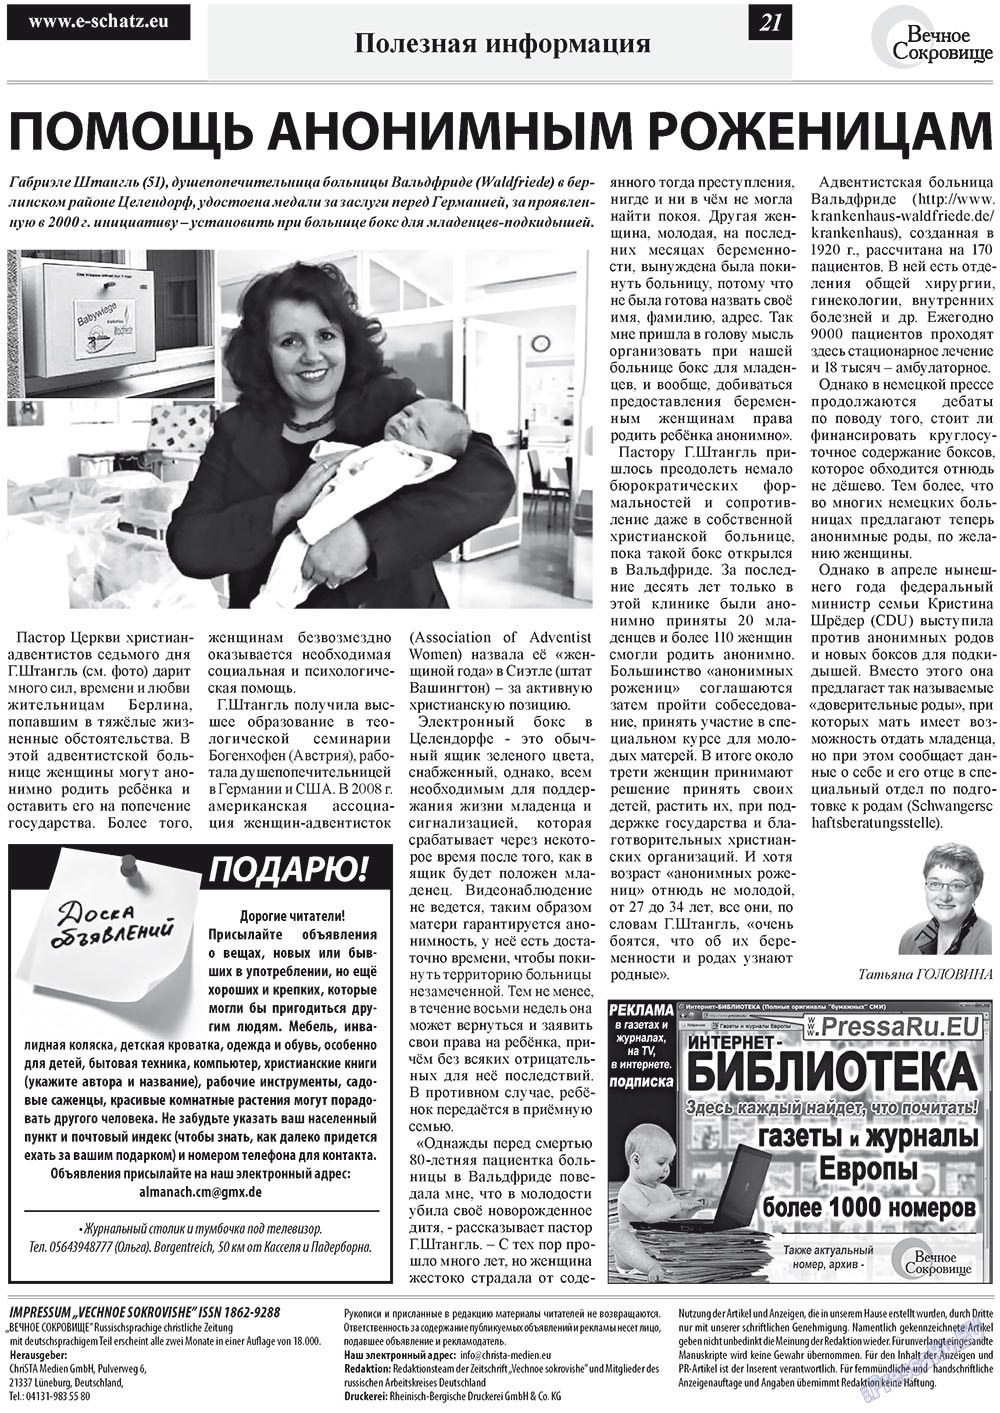 Вечное сокровище (газета). 2012 год, номер 4, стр. 21